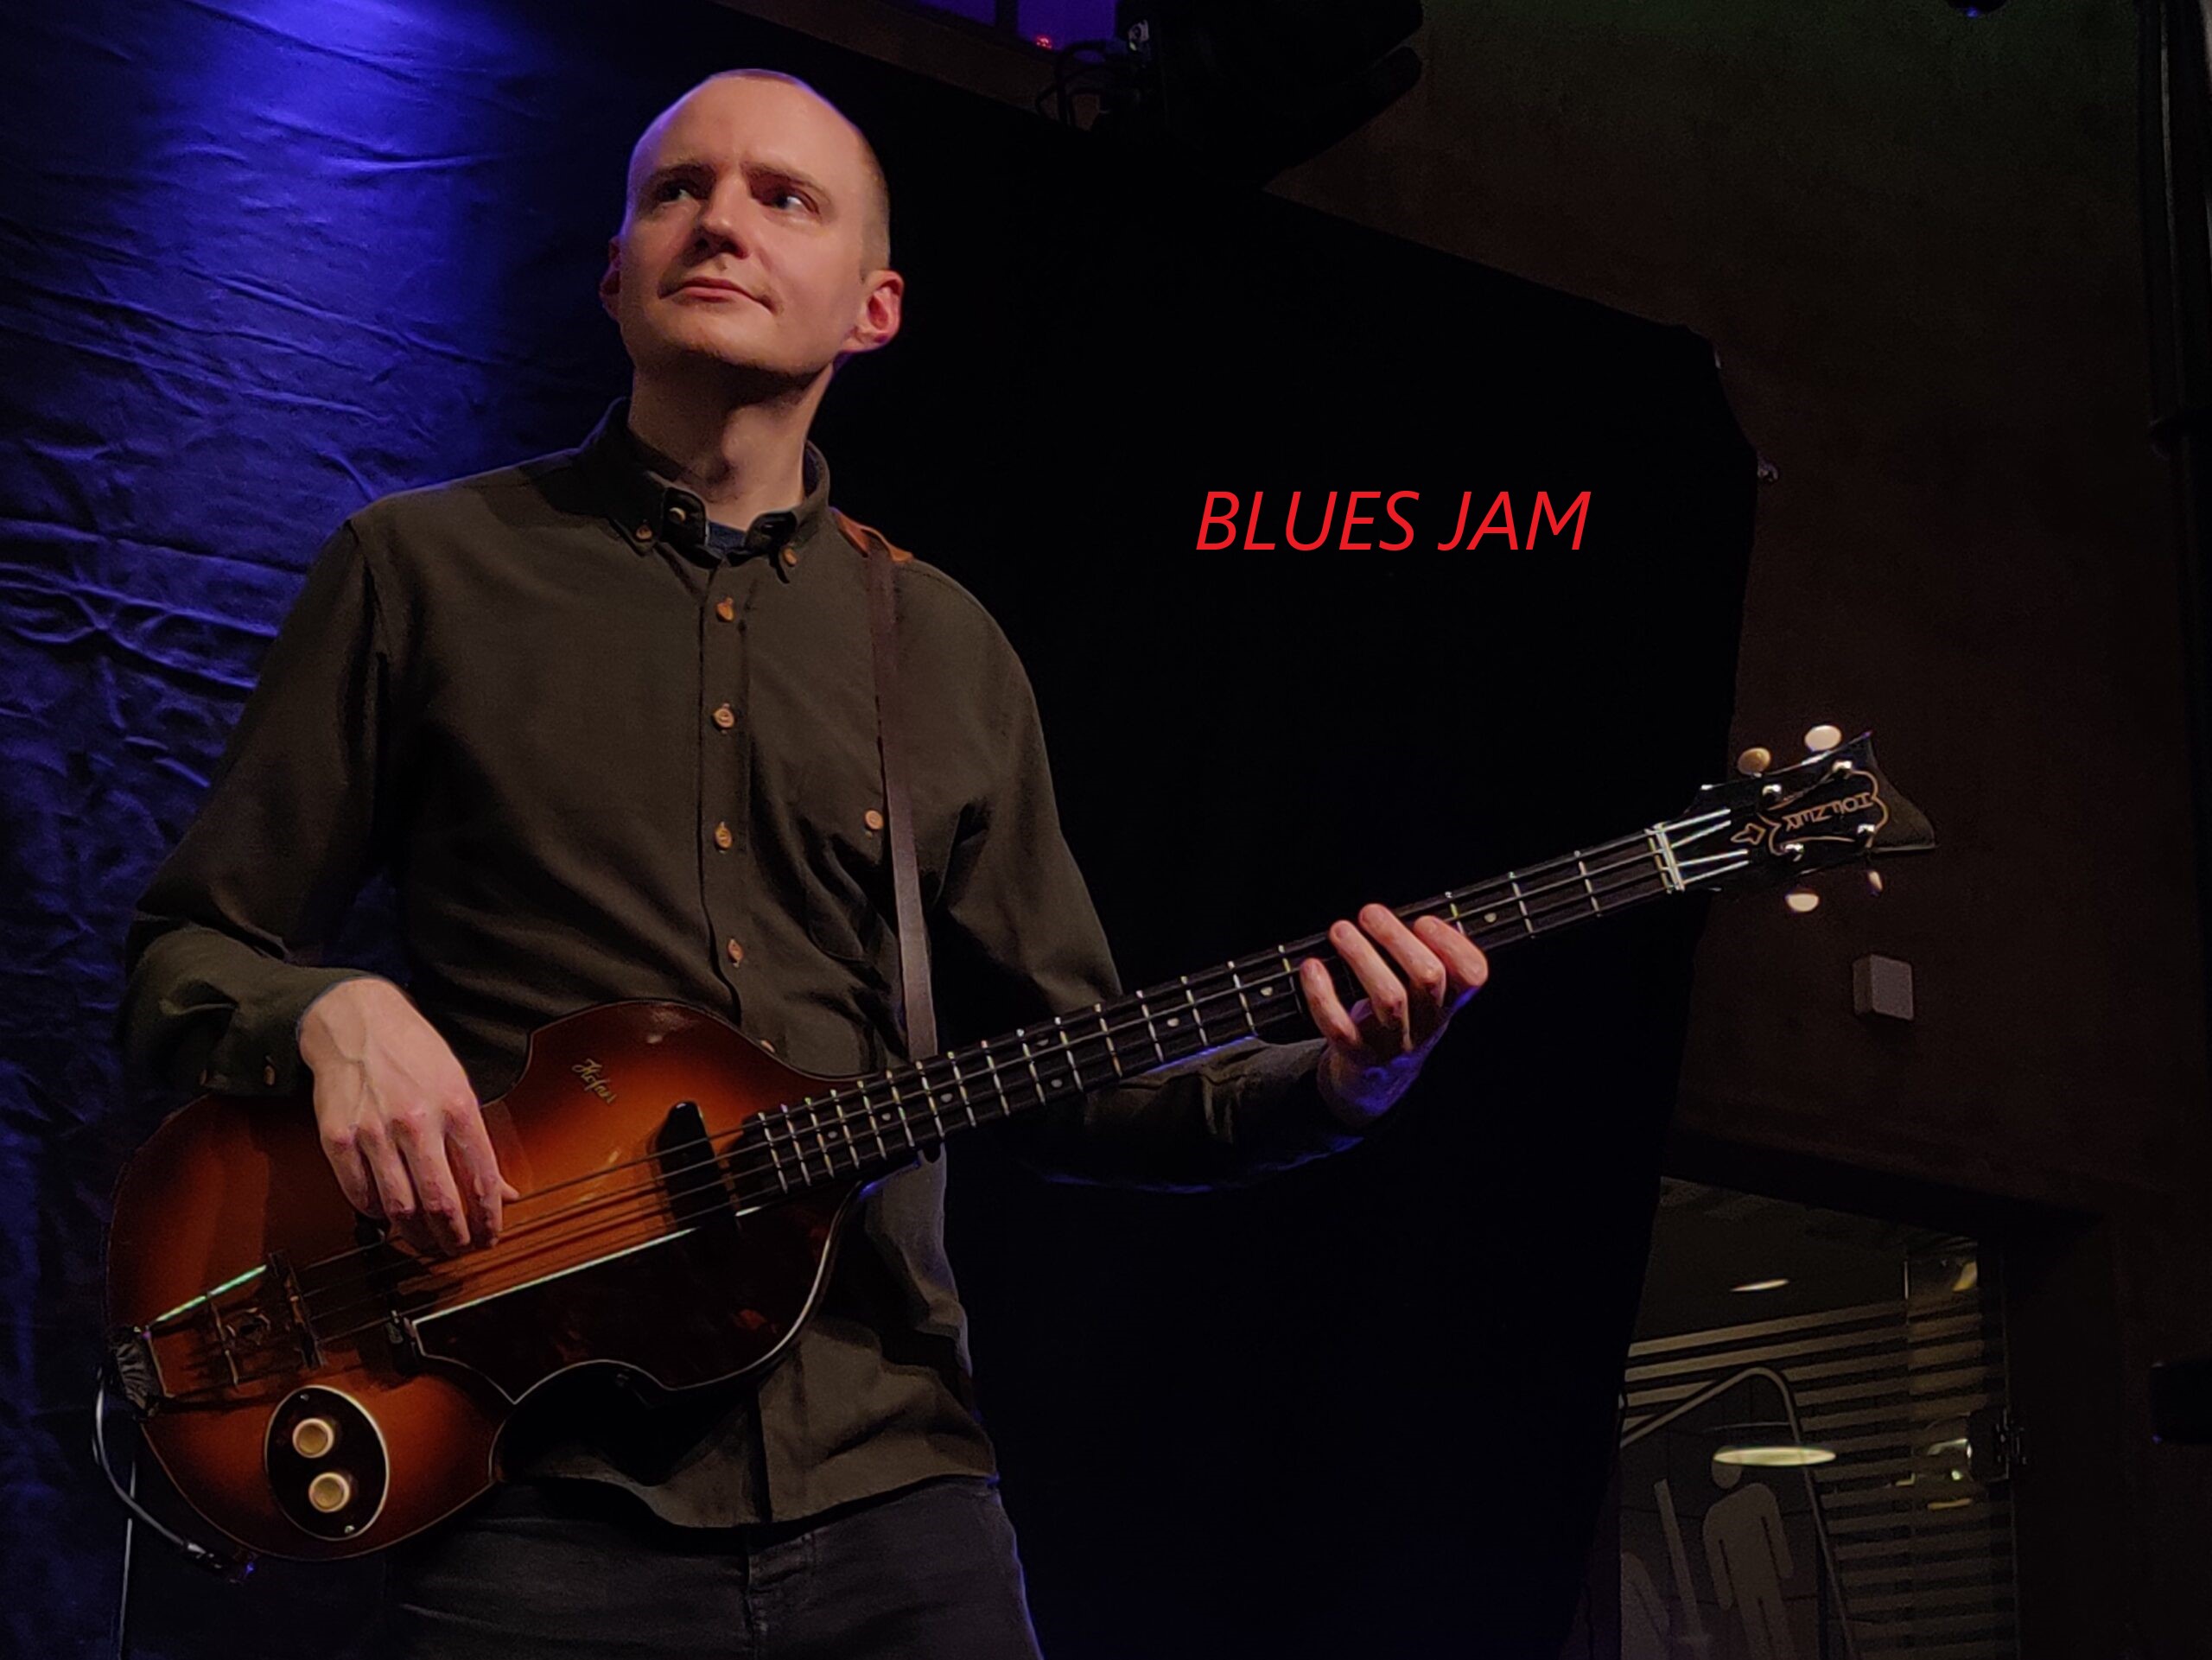 Blues Jam ved 
Laust Krudtmejer.
Feat. Joachim Svensmark og Simon Ørregaard